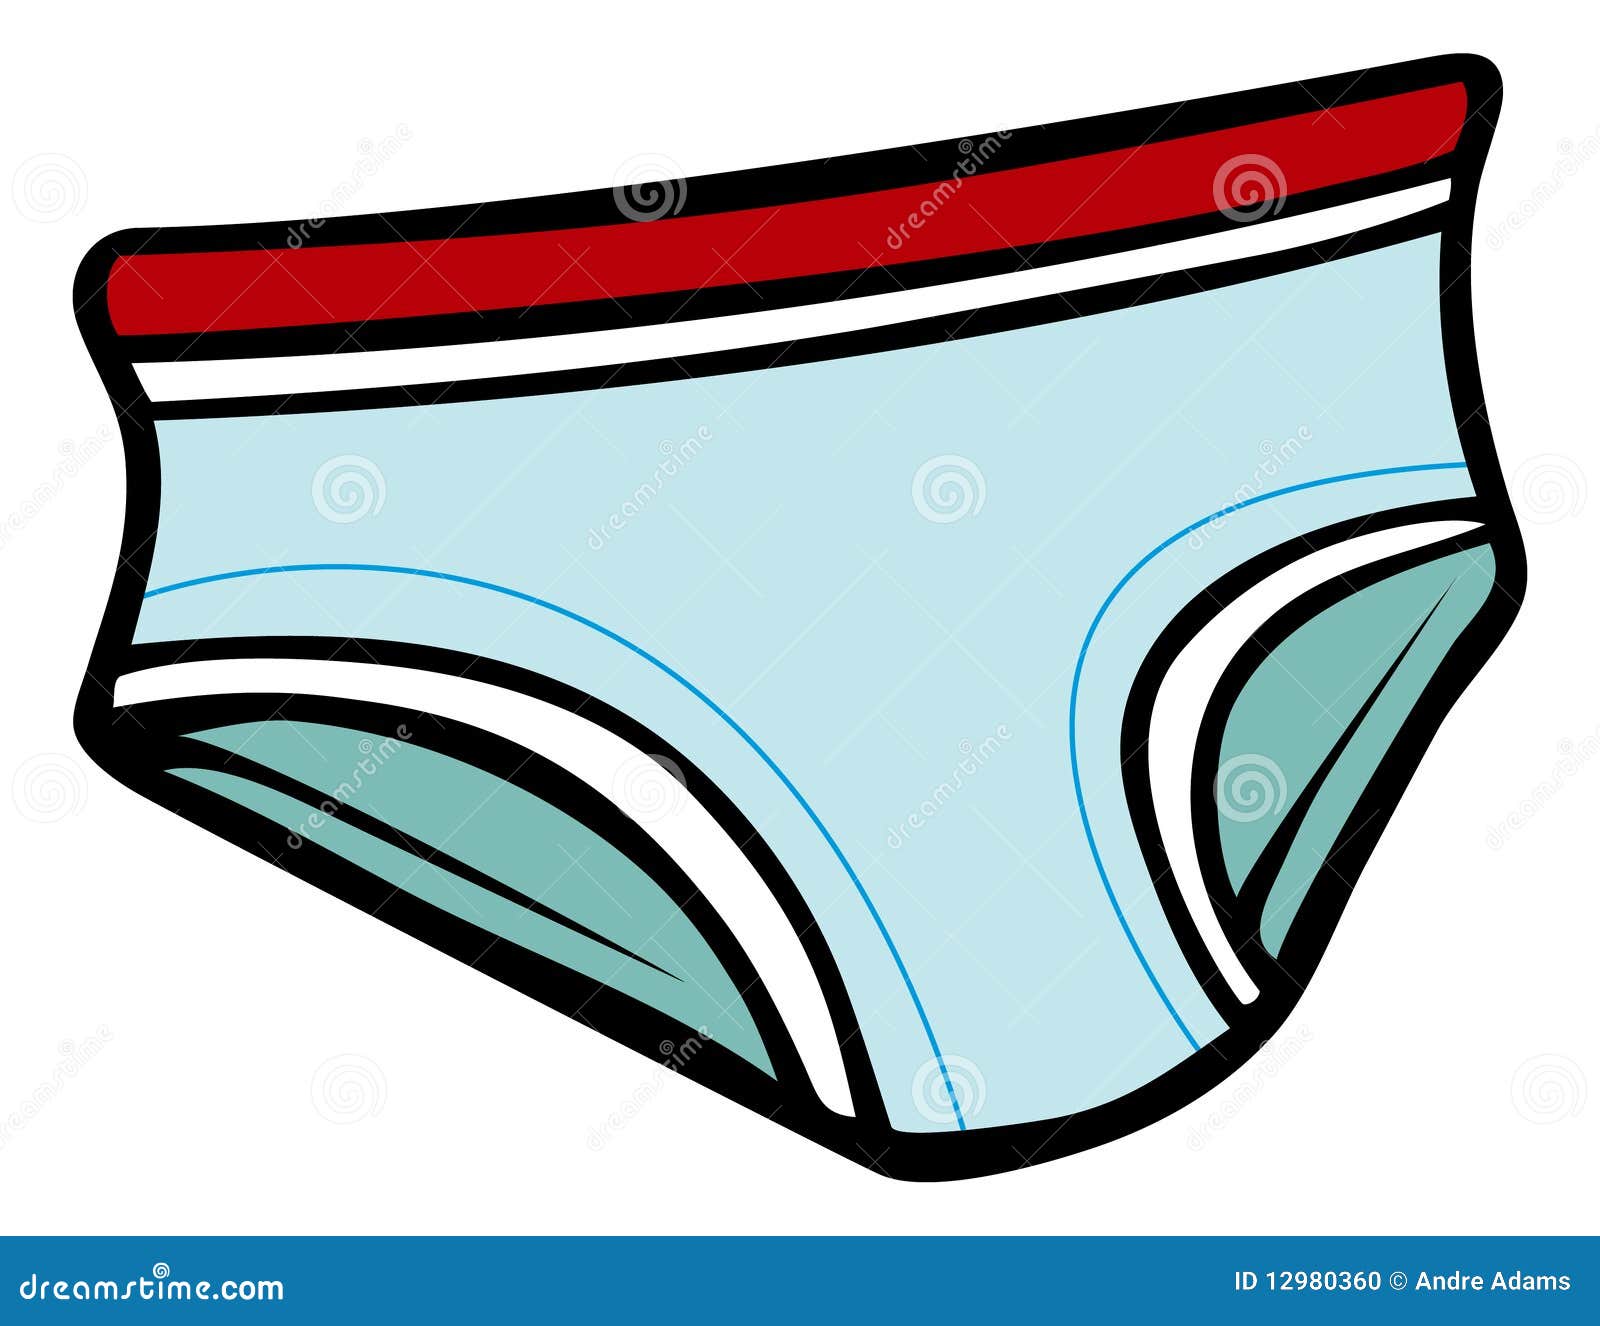 clipart mens underwear - photo #40